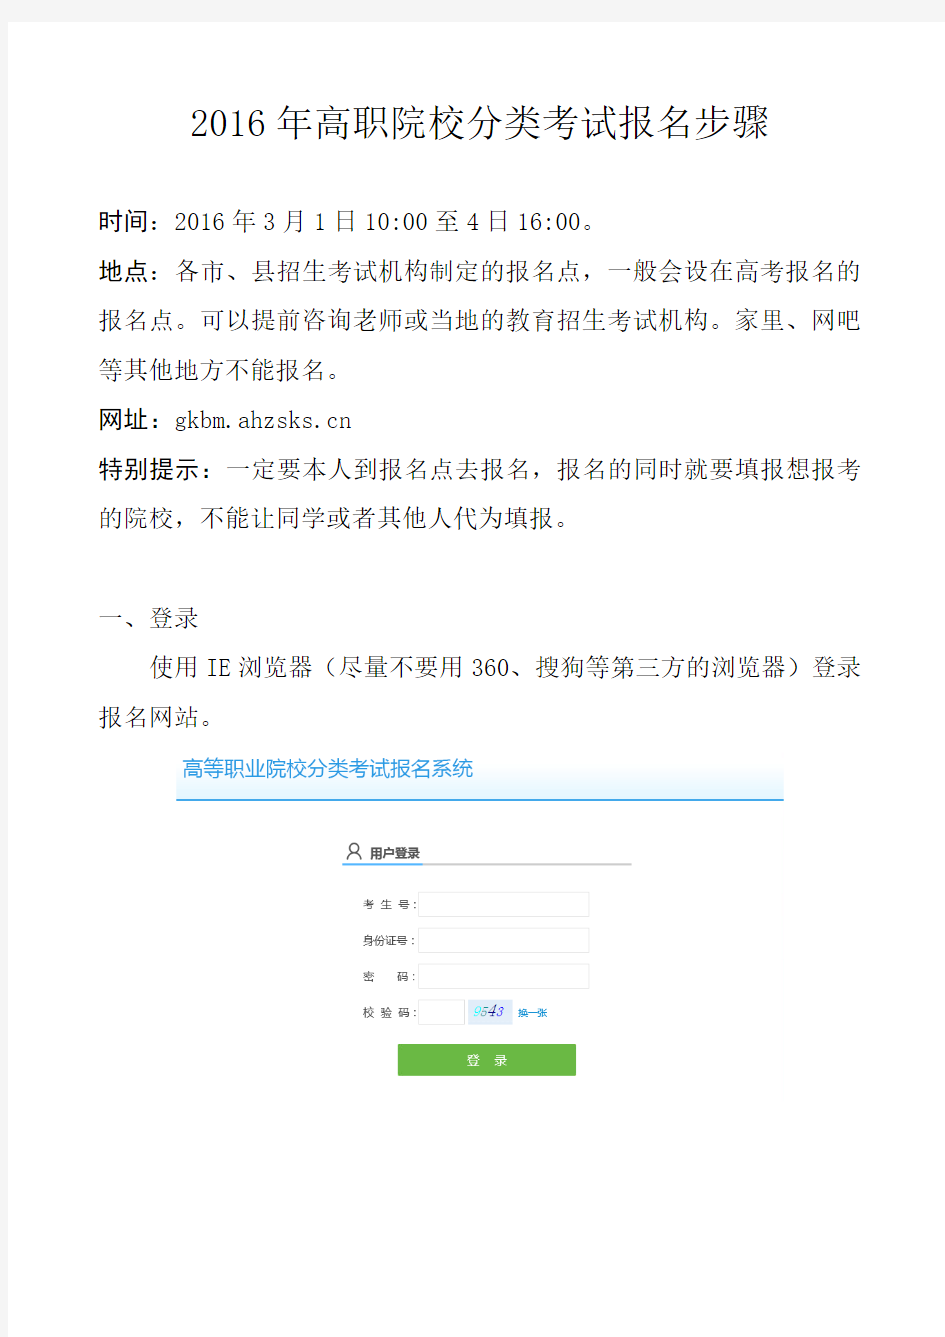 安徽省2016年高职院校分类考试报名步骤(考生用)